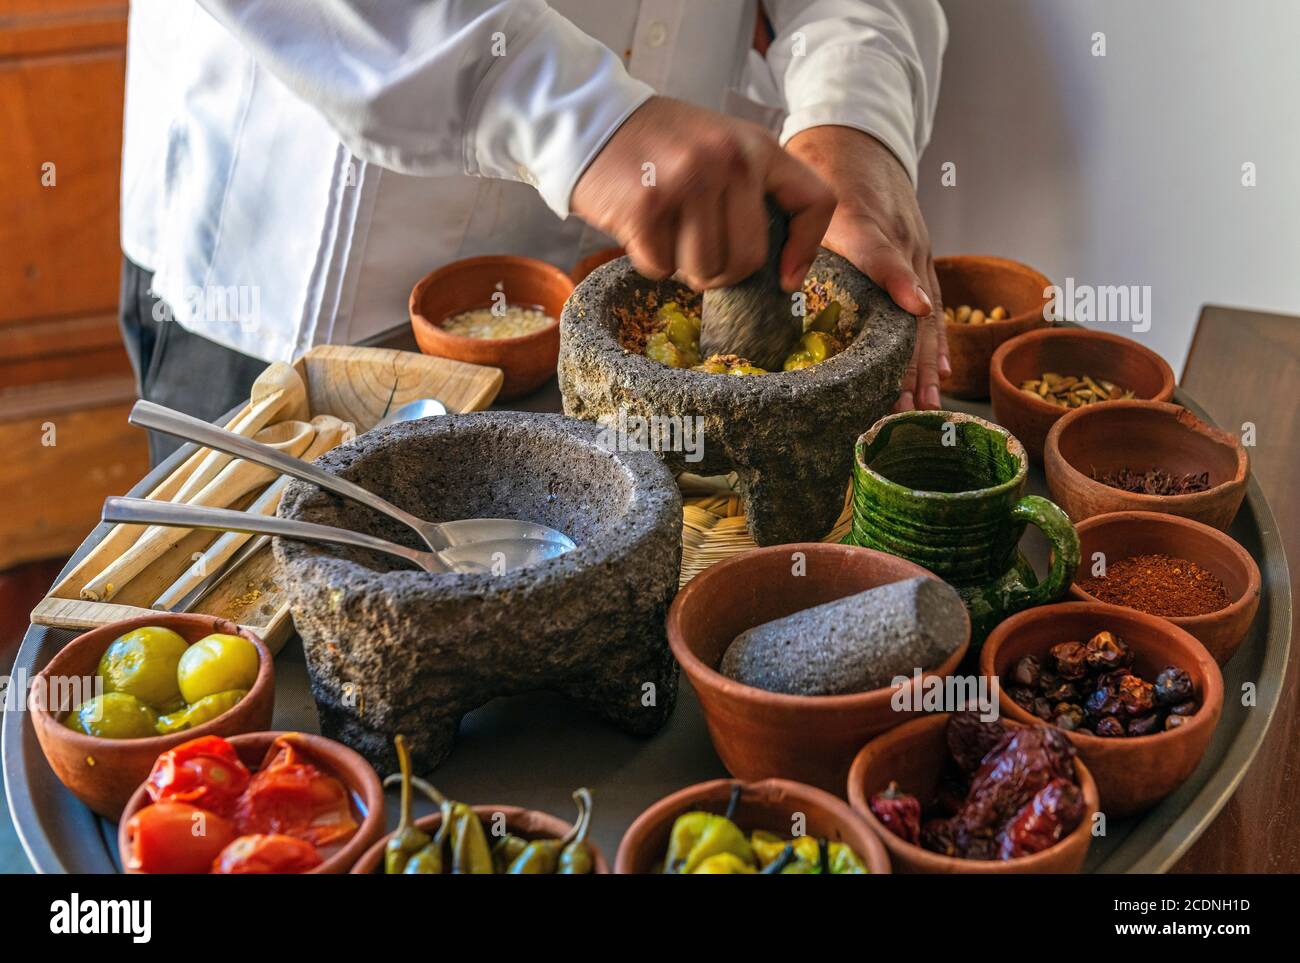 Küchenchef bereitet eine traditionelle Pasilla Chili Sauce mit allen Zutaten, Oaxaca, Mexiko. Fokussiere dich auf Mörtel, verwackelte Bewegungen. Stockfoto